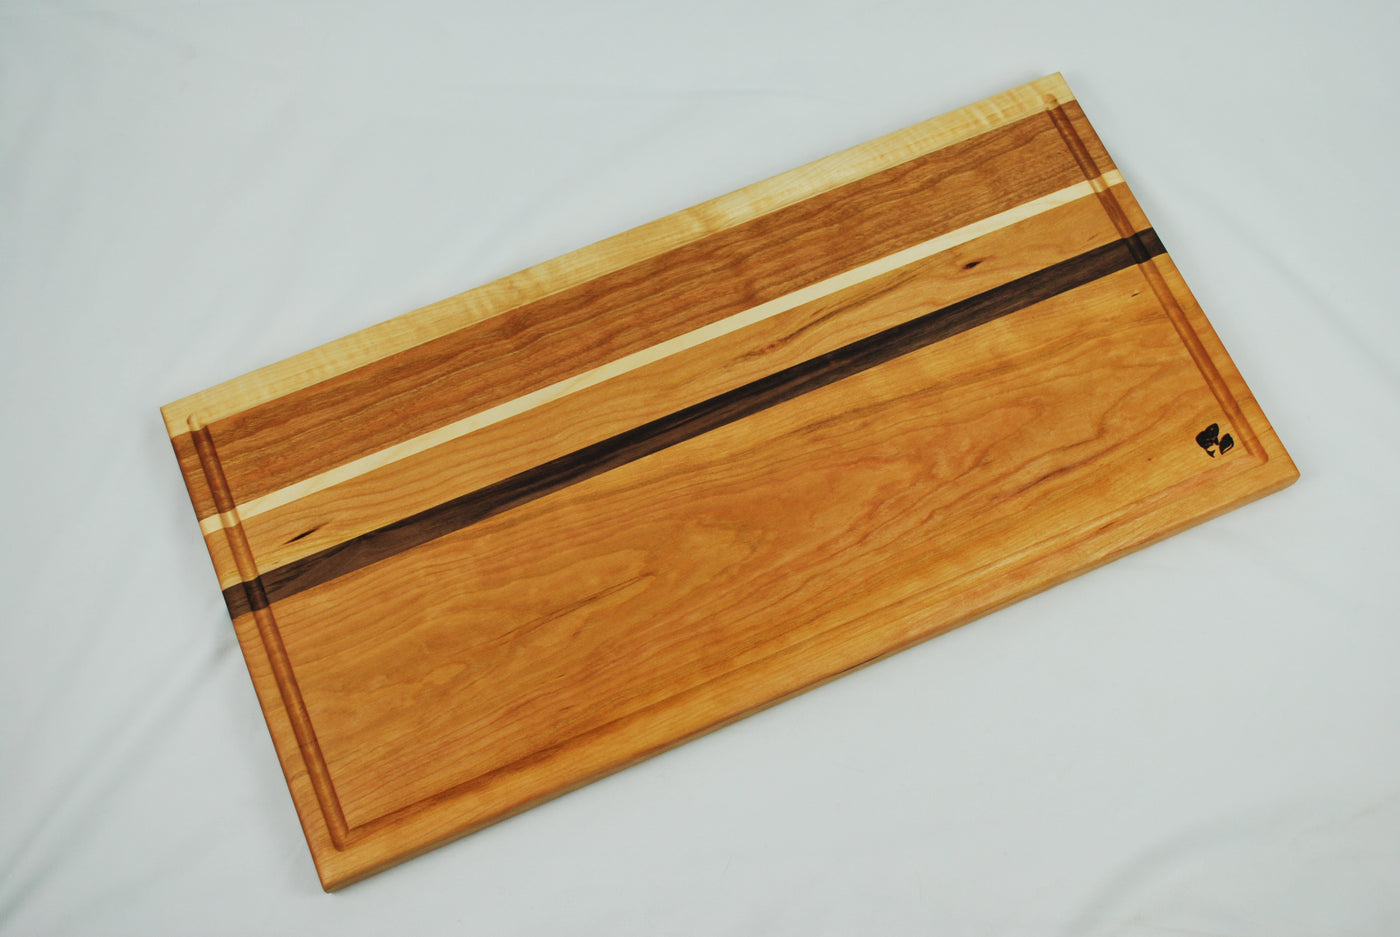 X-Large Cutting Board